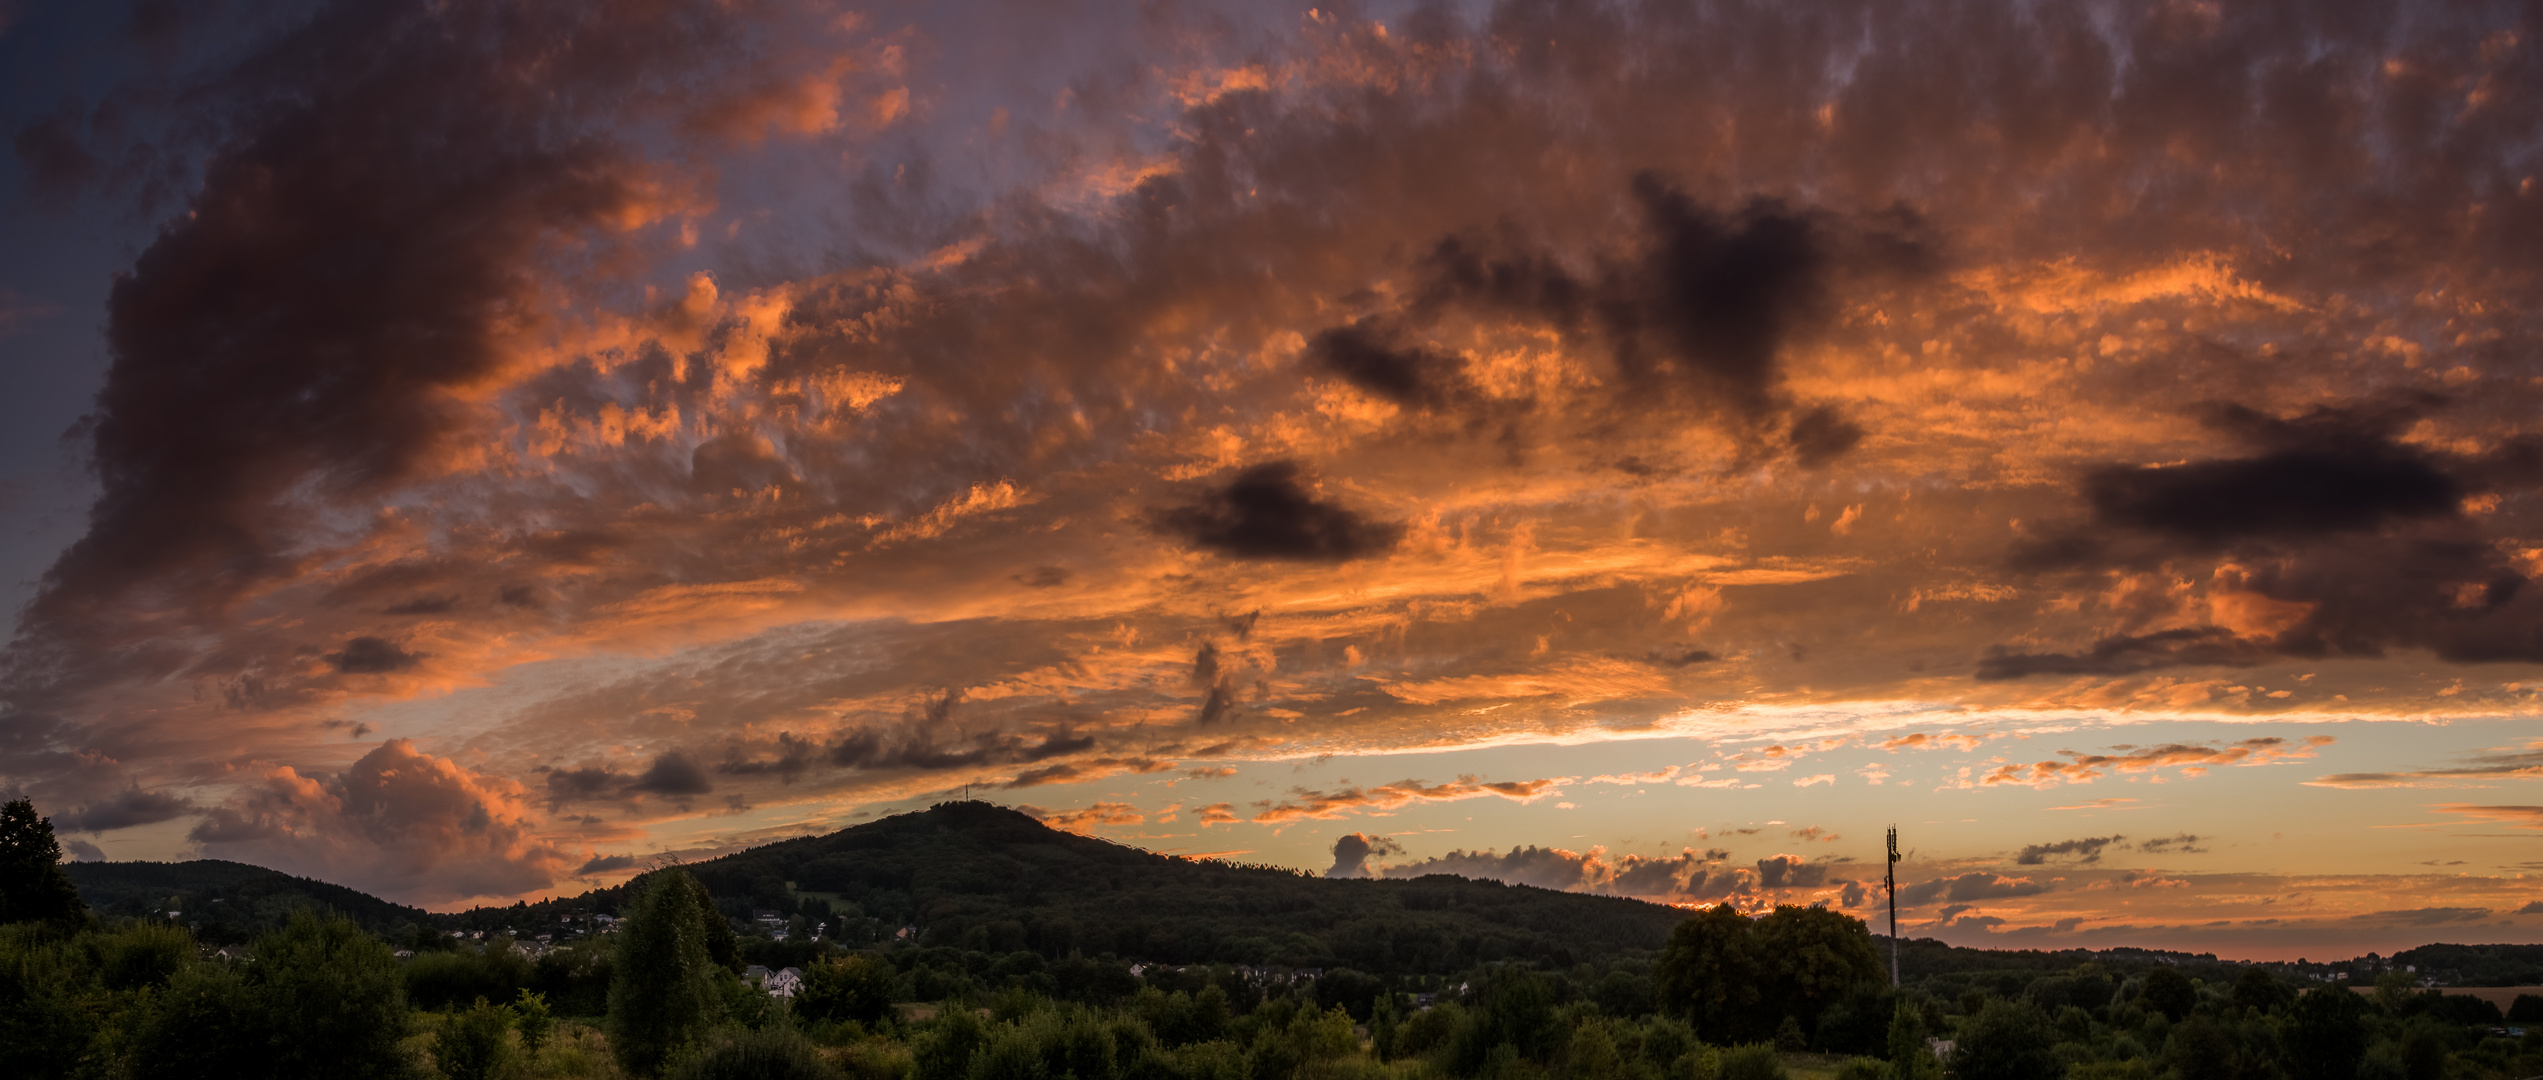 HDR Panorama vom Sonnenuntergang beim Siebengebirge